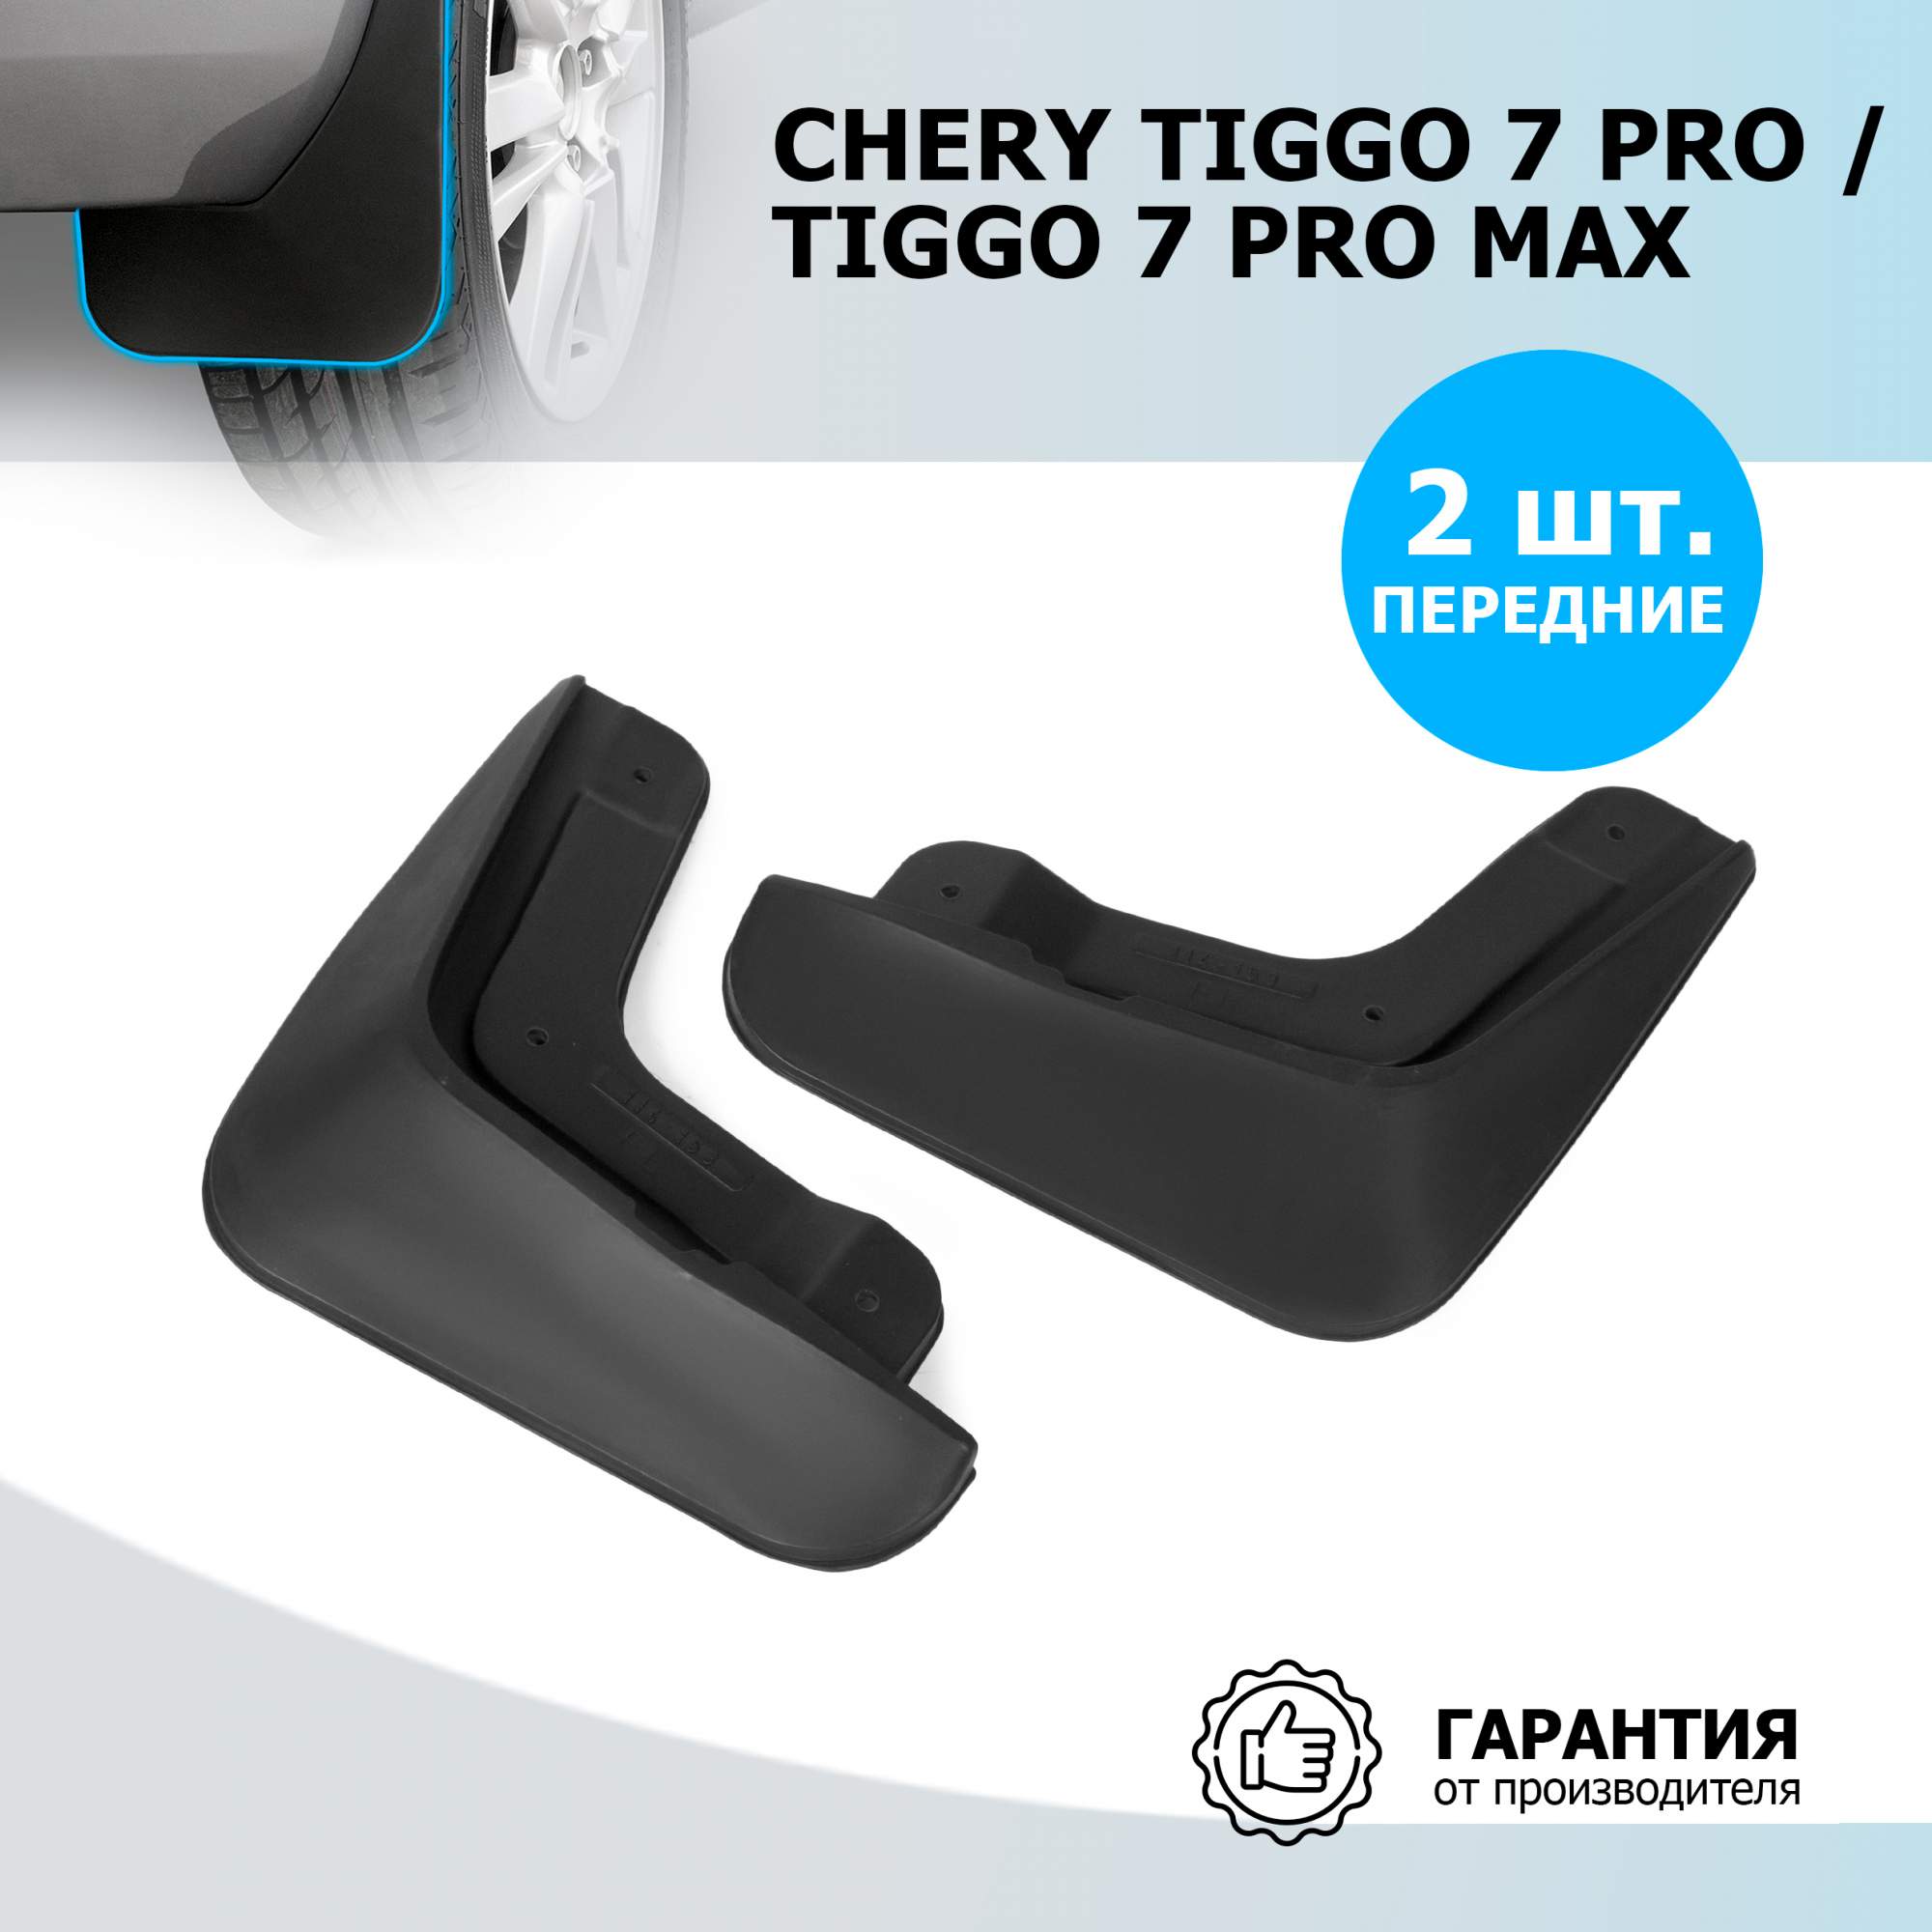 Брызговики передние Rival Chery Tiggo 7 Pro 2020-/Tiggo 7 Pro Max 2022-, 2 шт., 20908001 – купить в Москве, цены в интернет-магазинах на Мегамаркет